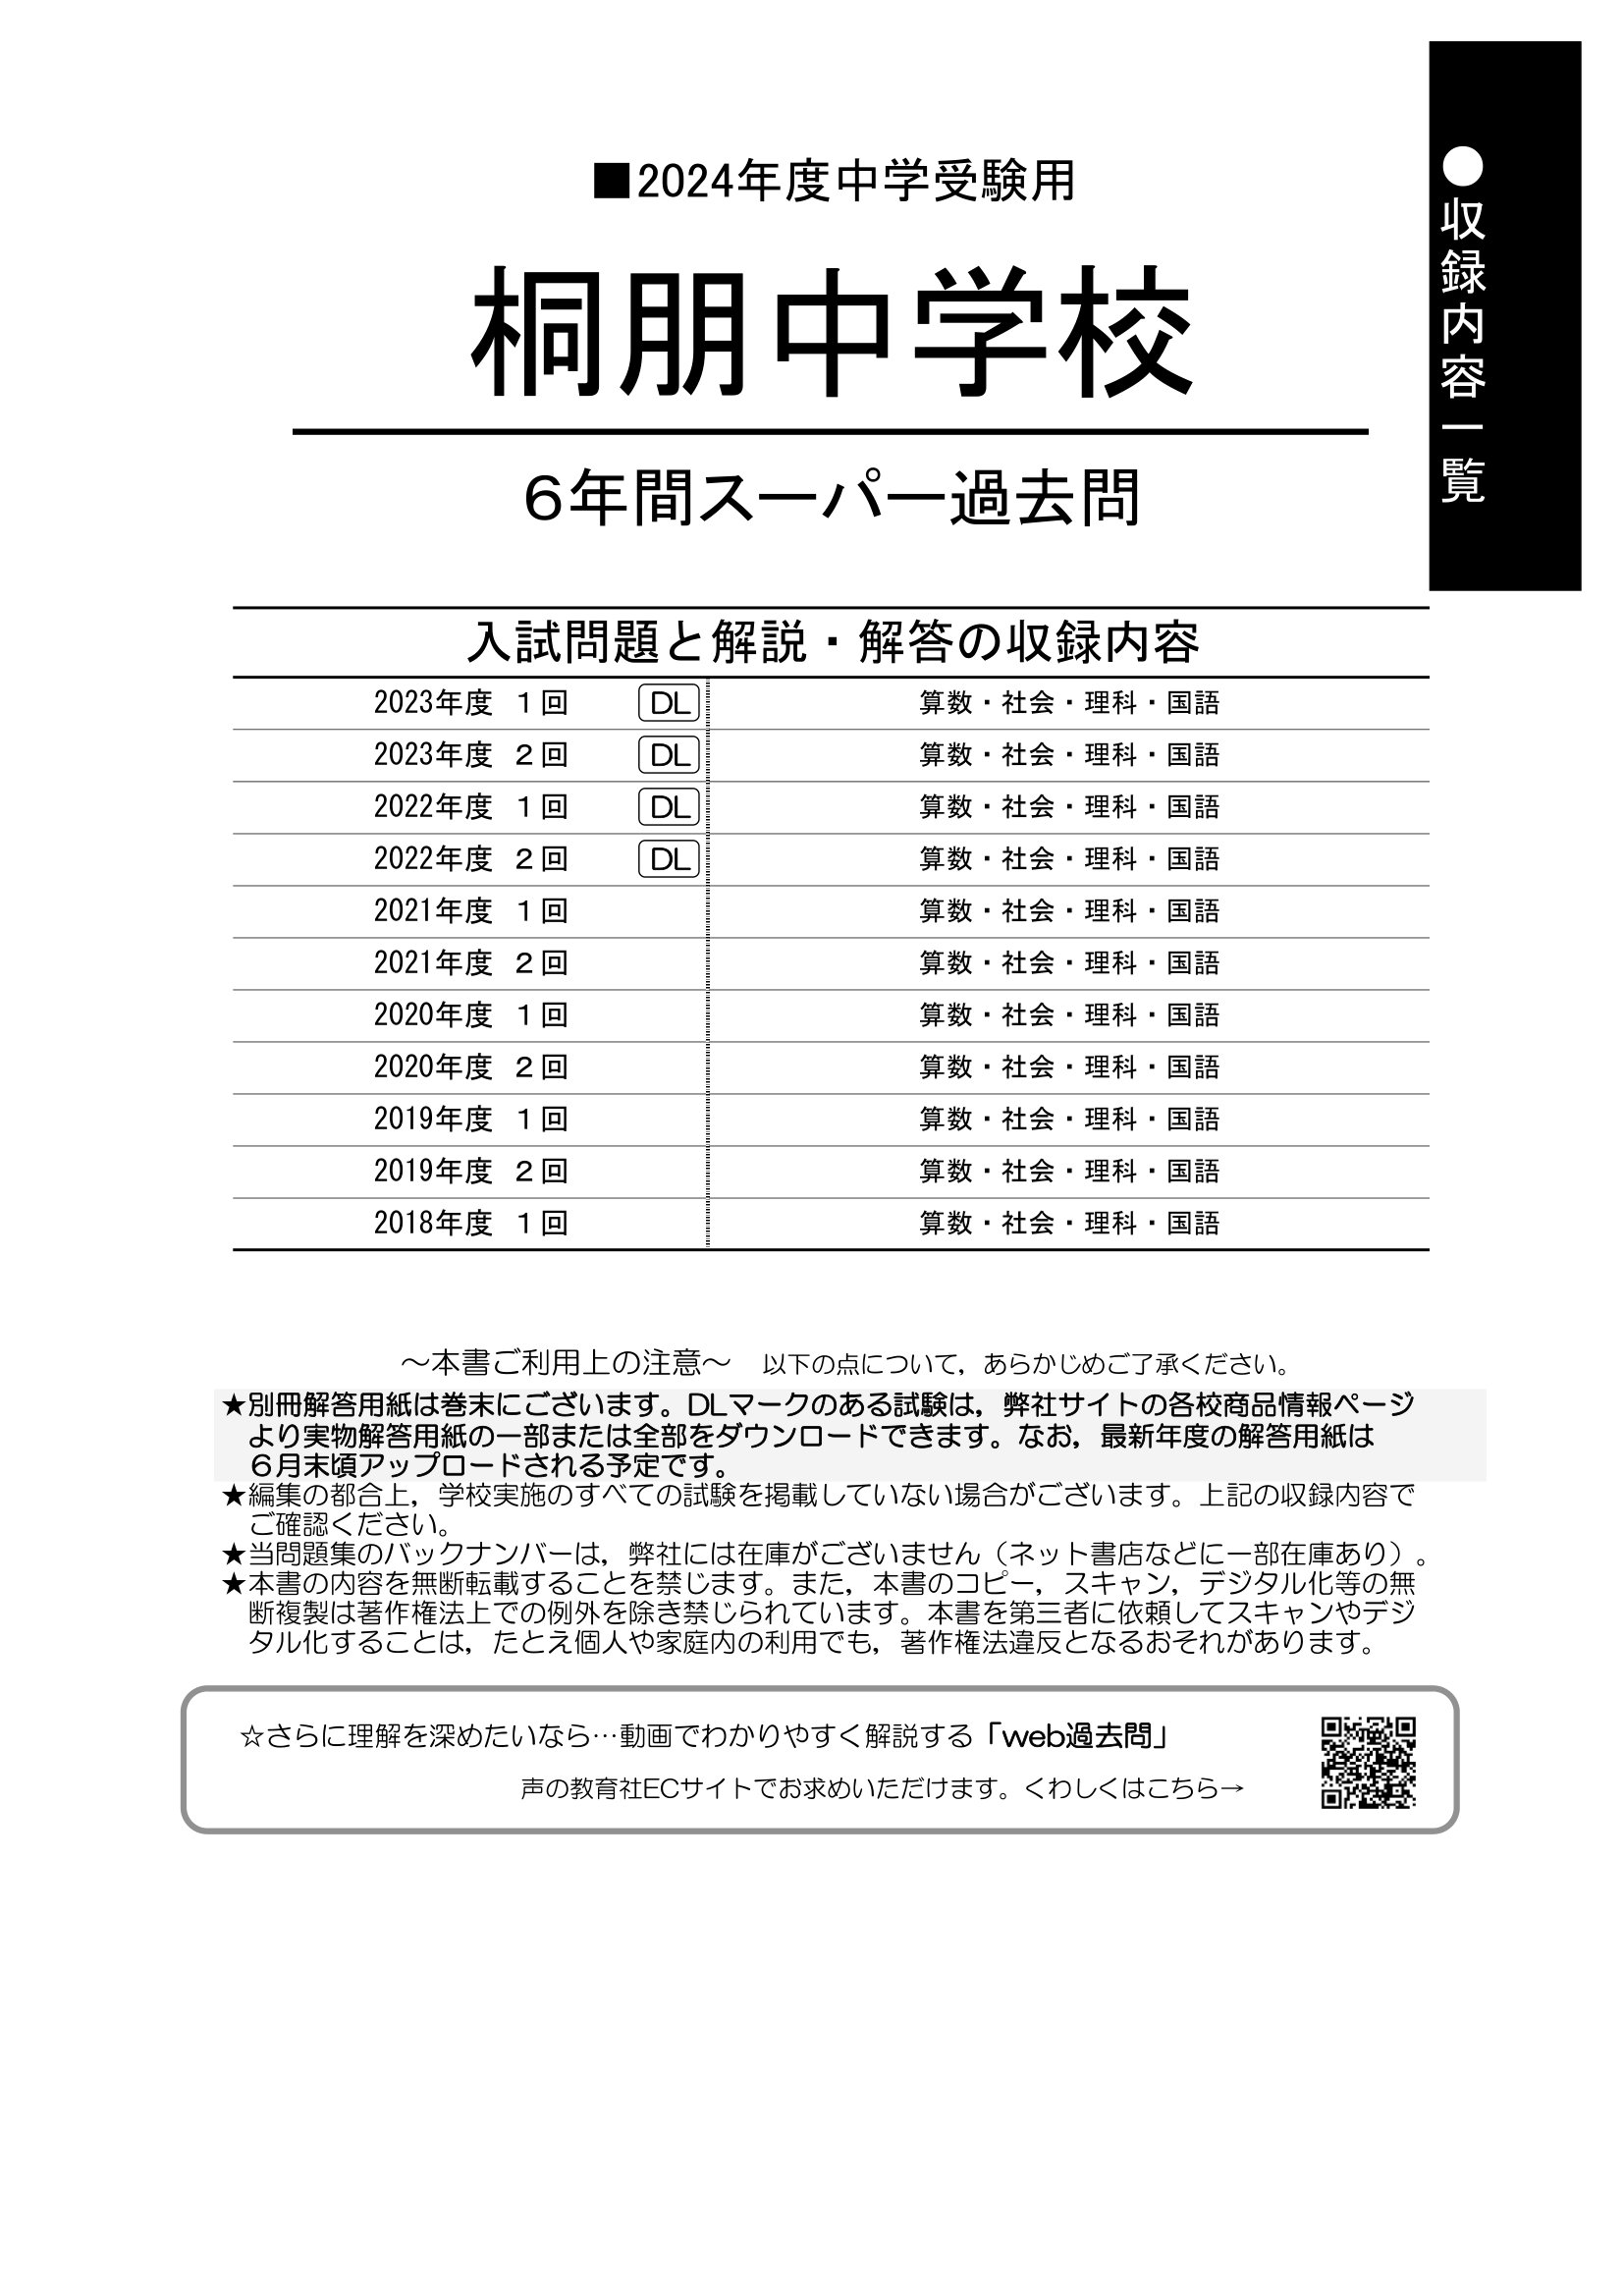 桐朋女子中学入試用 2007~2011年筆記試験問題集 - 参考書